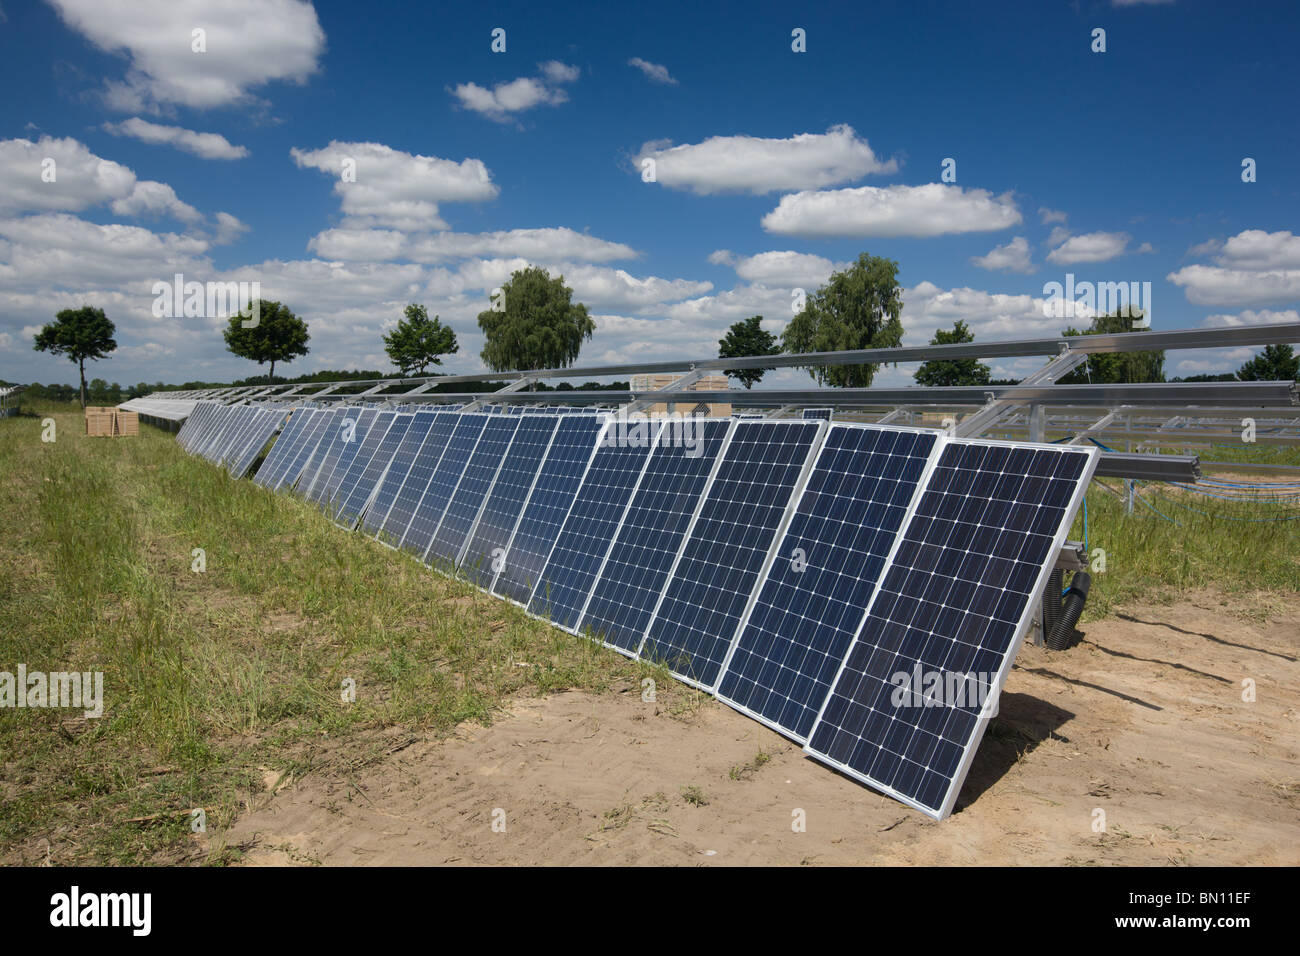 La construction d'une ferme solaire - modules d'installation en attente Banque D'Images